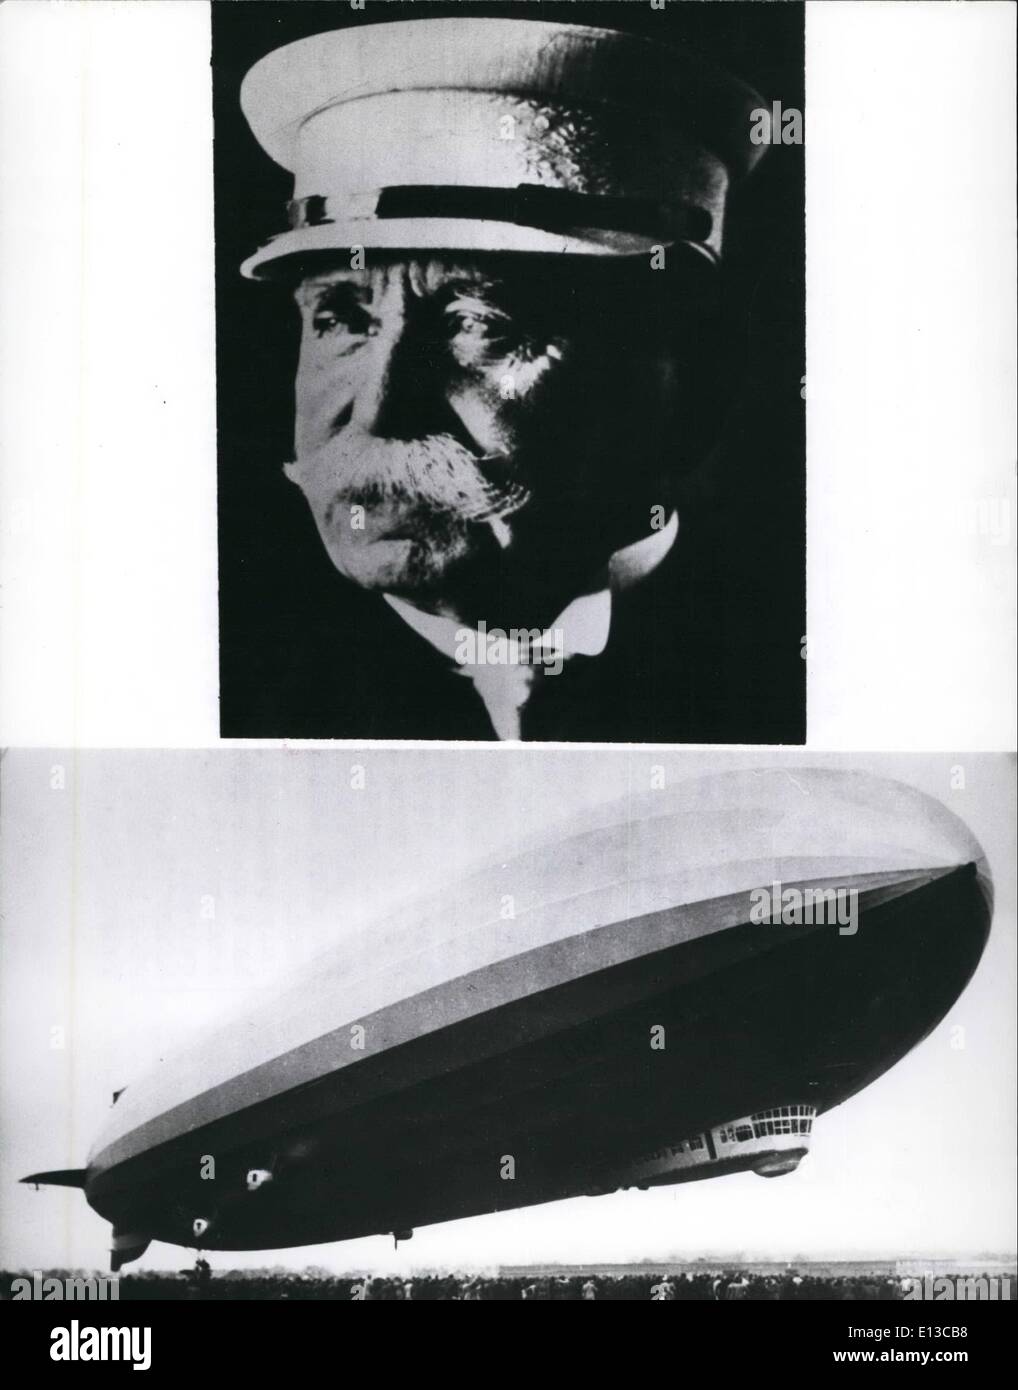 Febrero 29, 2012 - 60 Aniversario de Ferdinand conde de Zeppelin la muerte , el 8 de marzo de 1977 allí es el 60 aniversario de Fernando Conde de zeppelin la muerte, Zeppelin se convirtió en la historia como el inventor del dirigible. Ya en 1974 él mundo en la construcción de un dirigible. En 1892, abordó este problema asistida por su ingeniero th. Kober, en 1895 su plan fue rechazado por una comisión de expertos Foto de stock